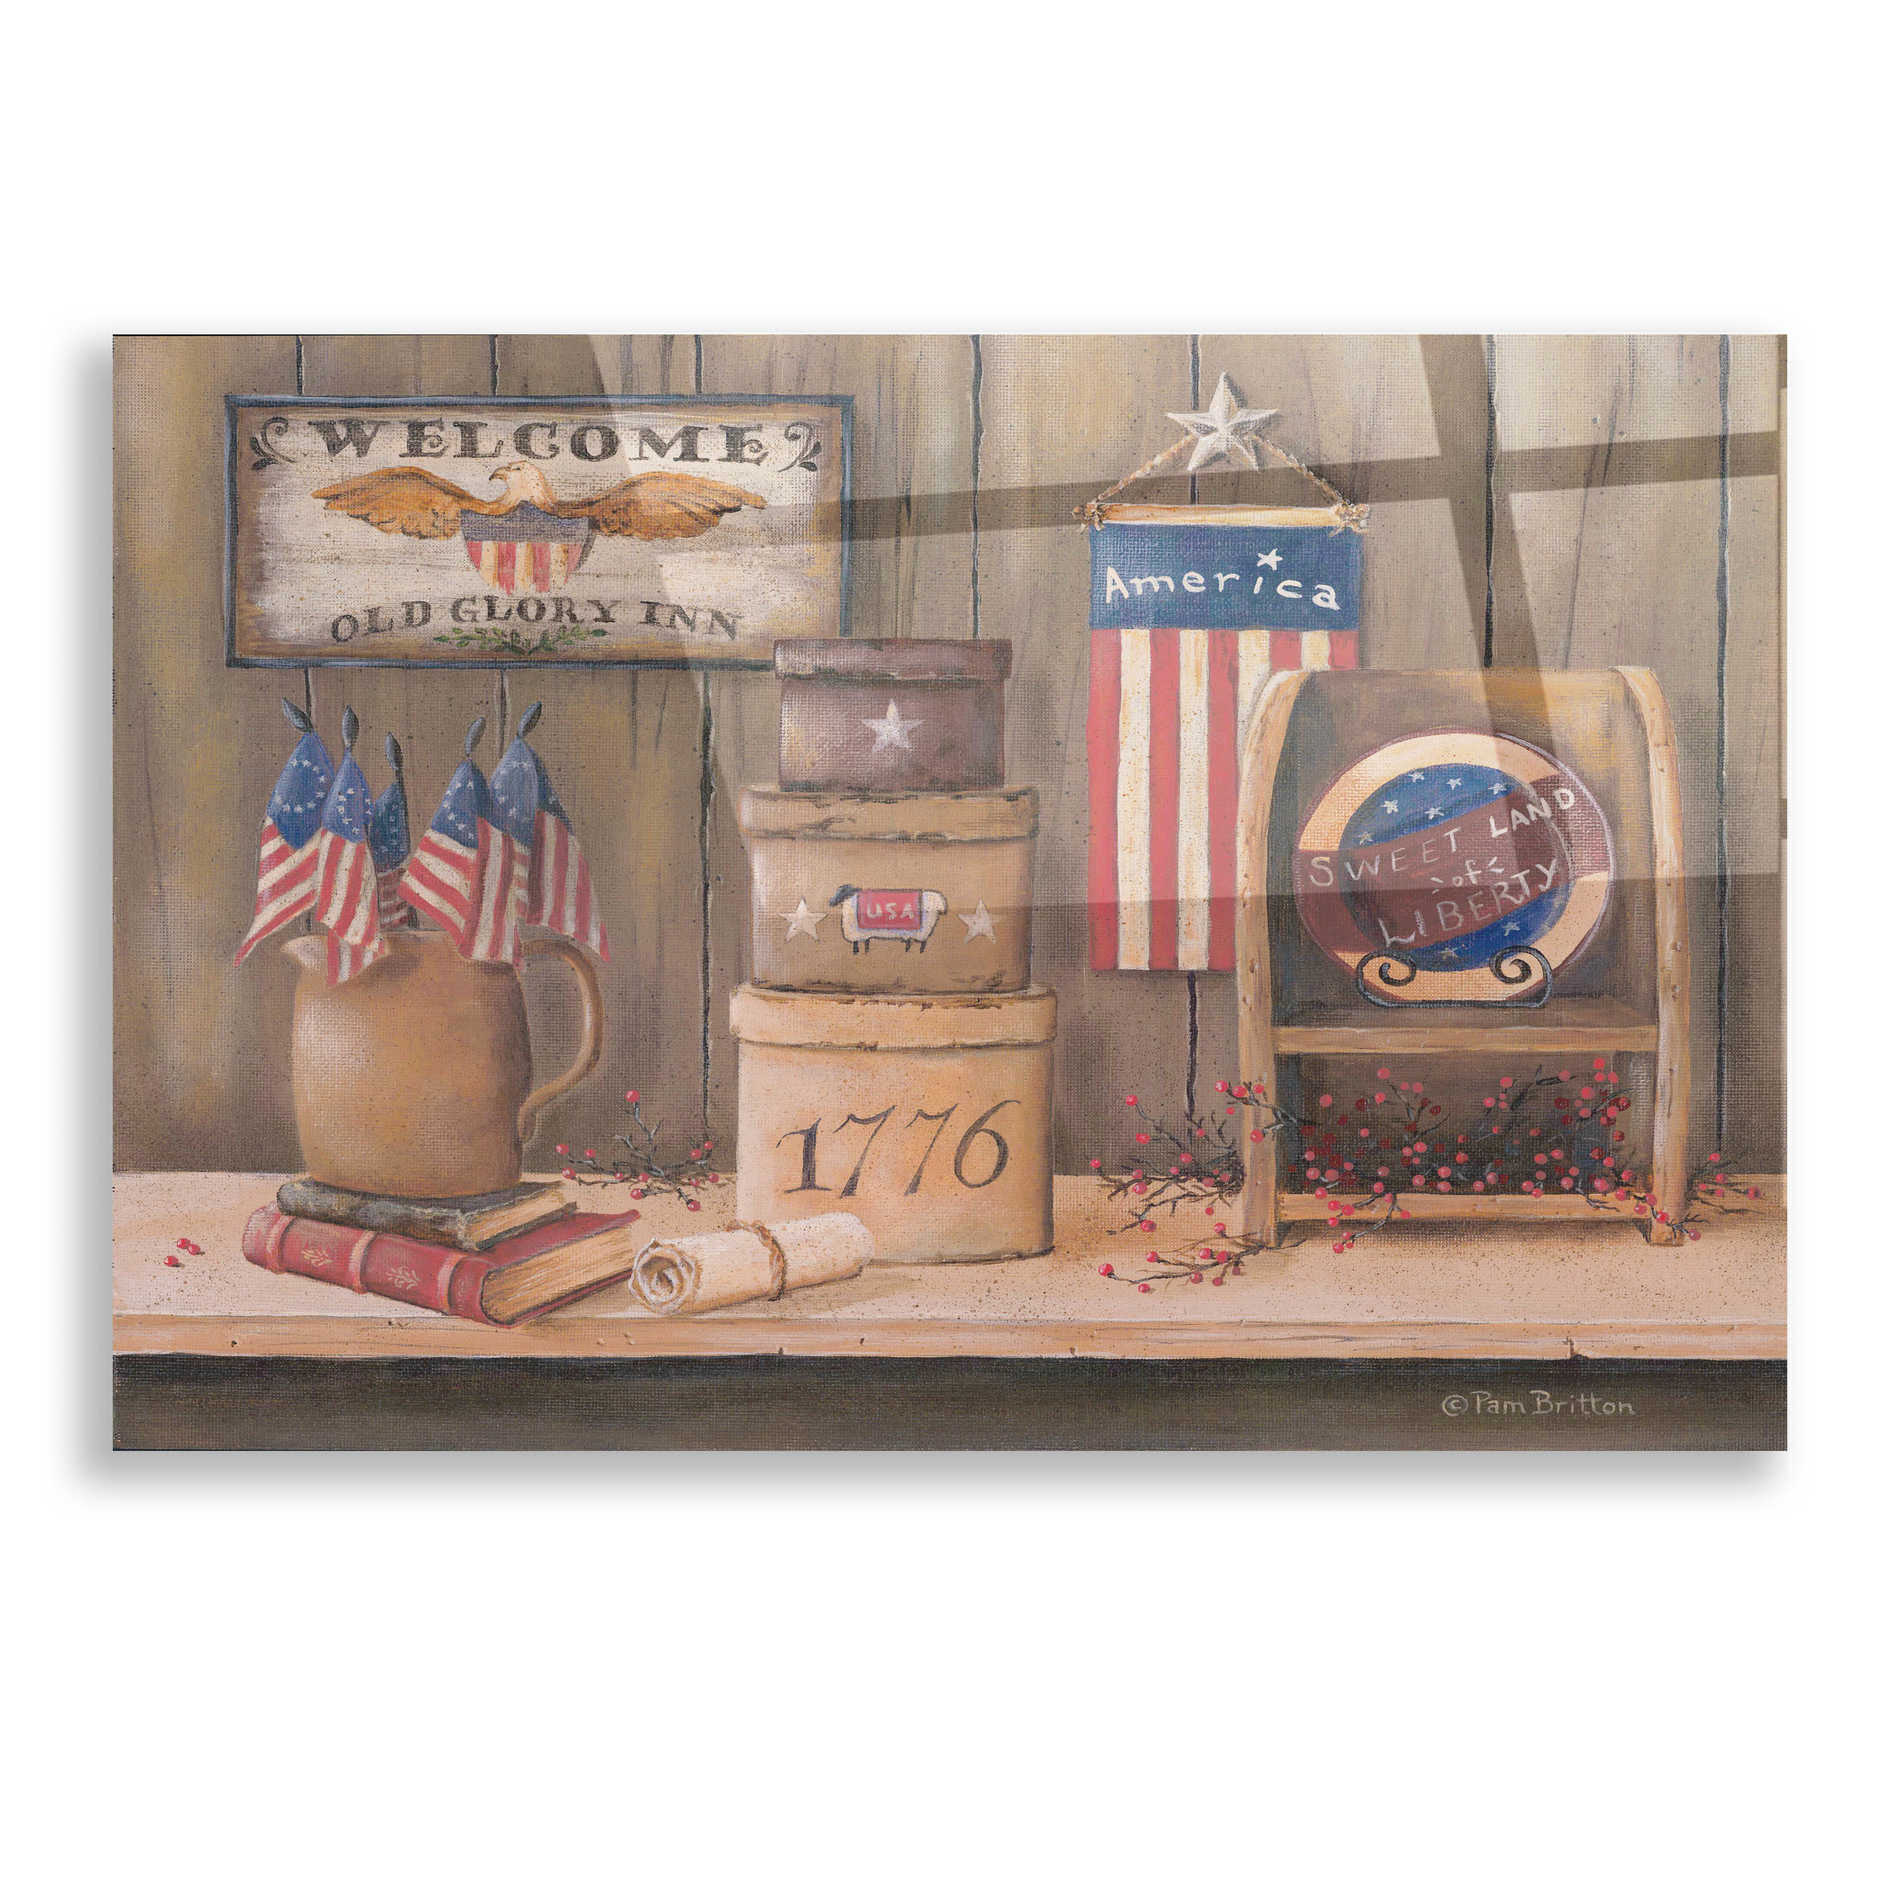 Epic Art 'Sweet Land of Liberty' by Pam Britton, Acrylic Glass Wall Art,16x12